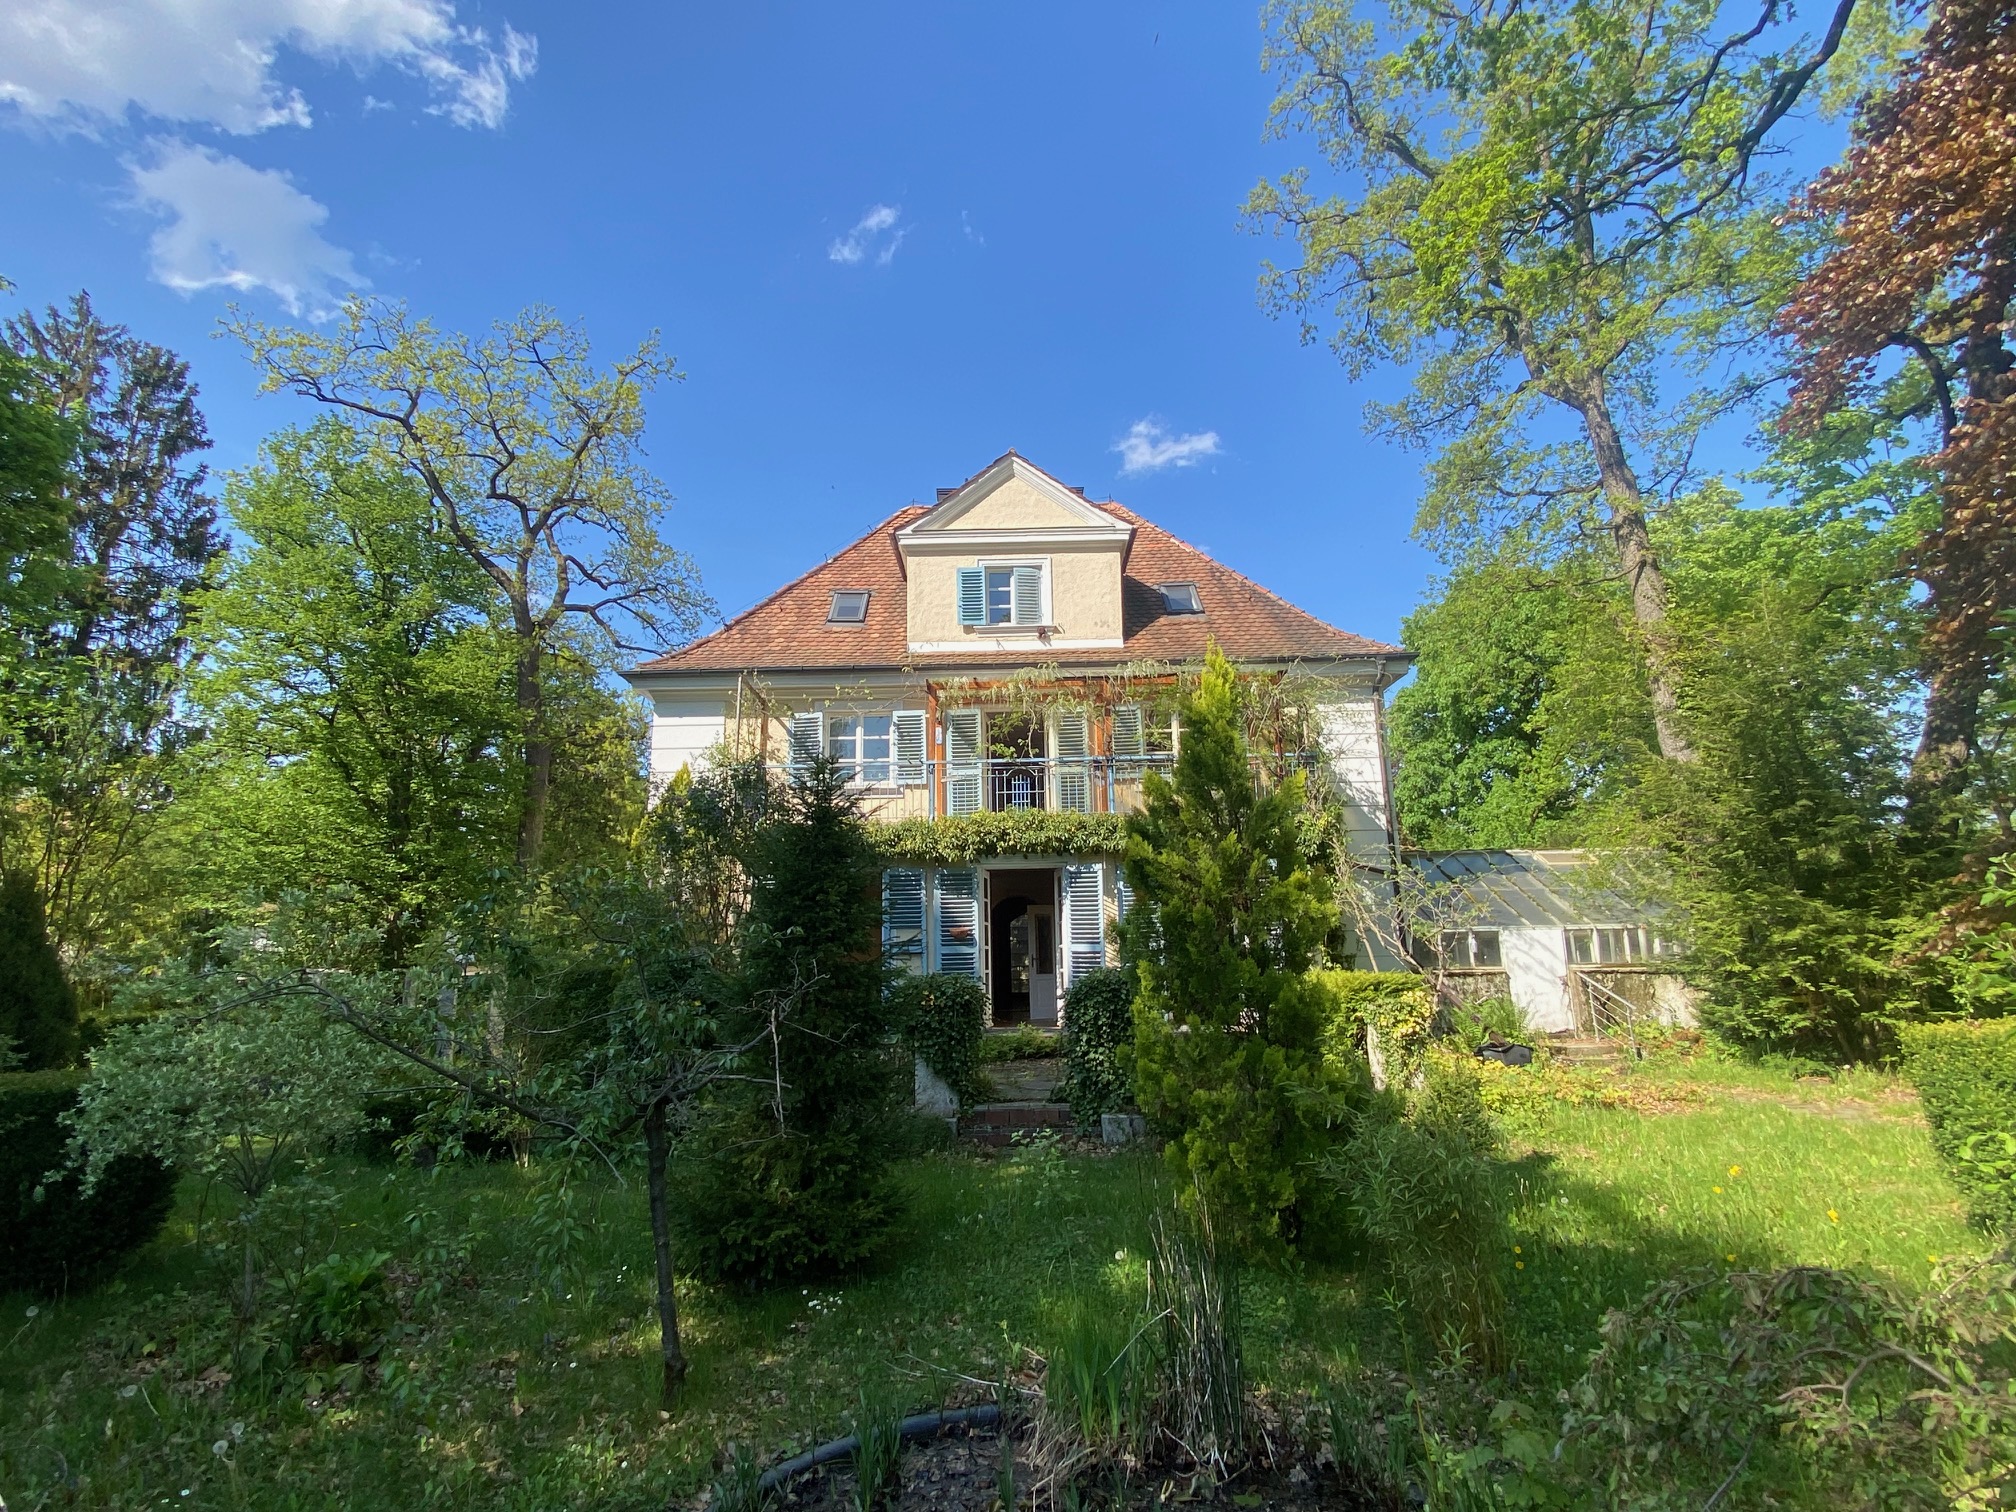 +Verkauft+Villa mit Parkgrundstück in der Gartenstadt Gräfelfing